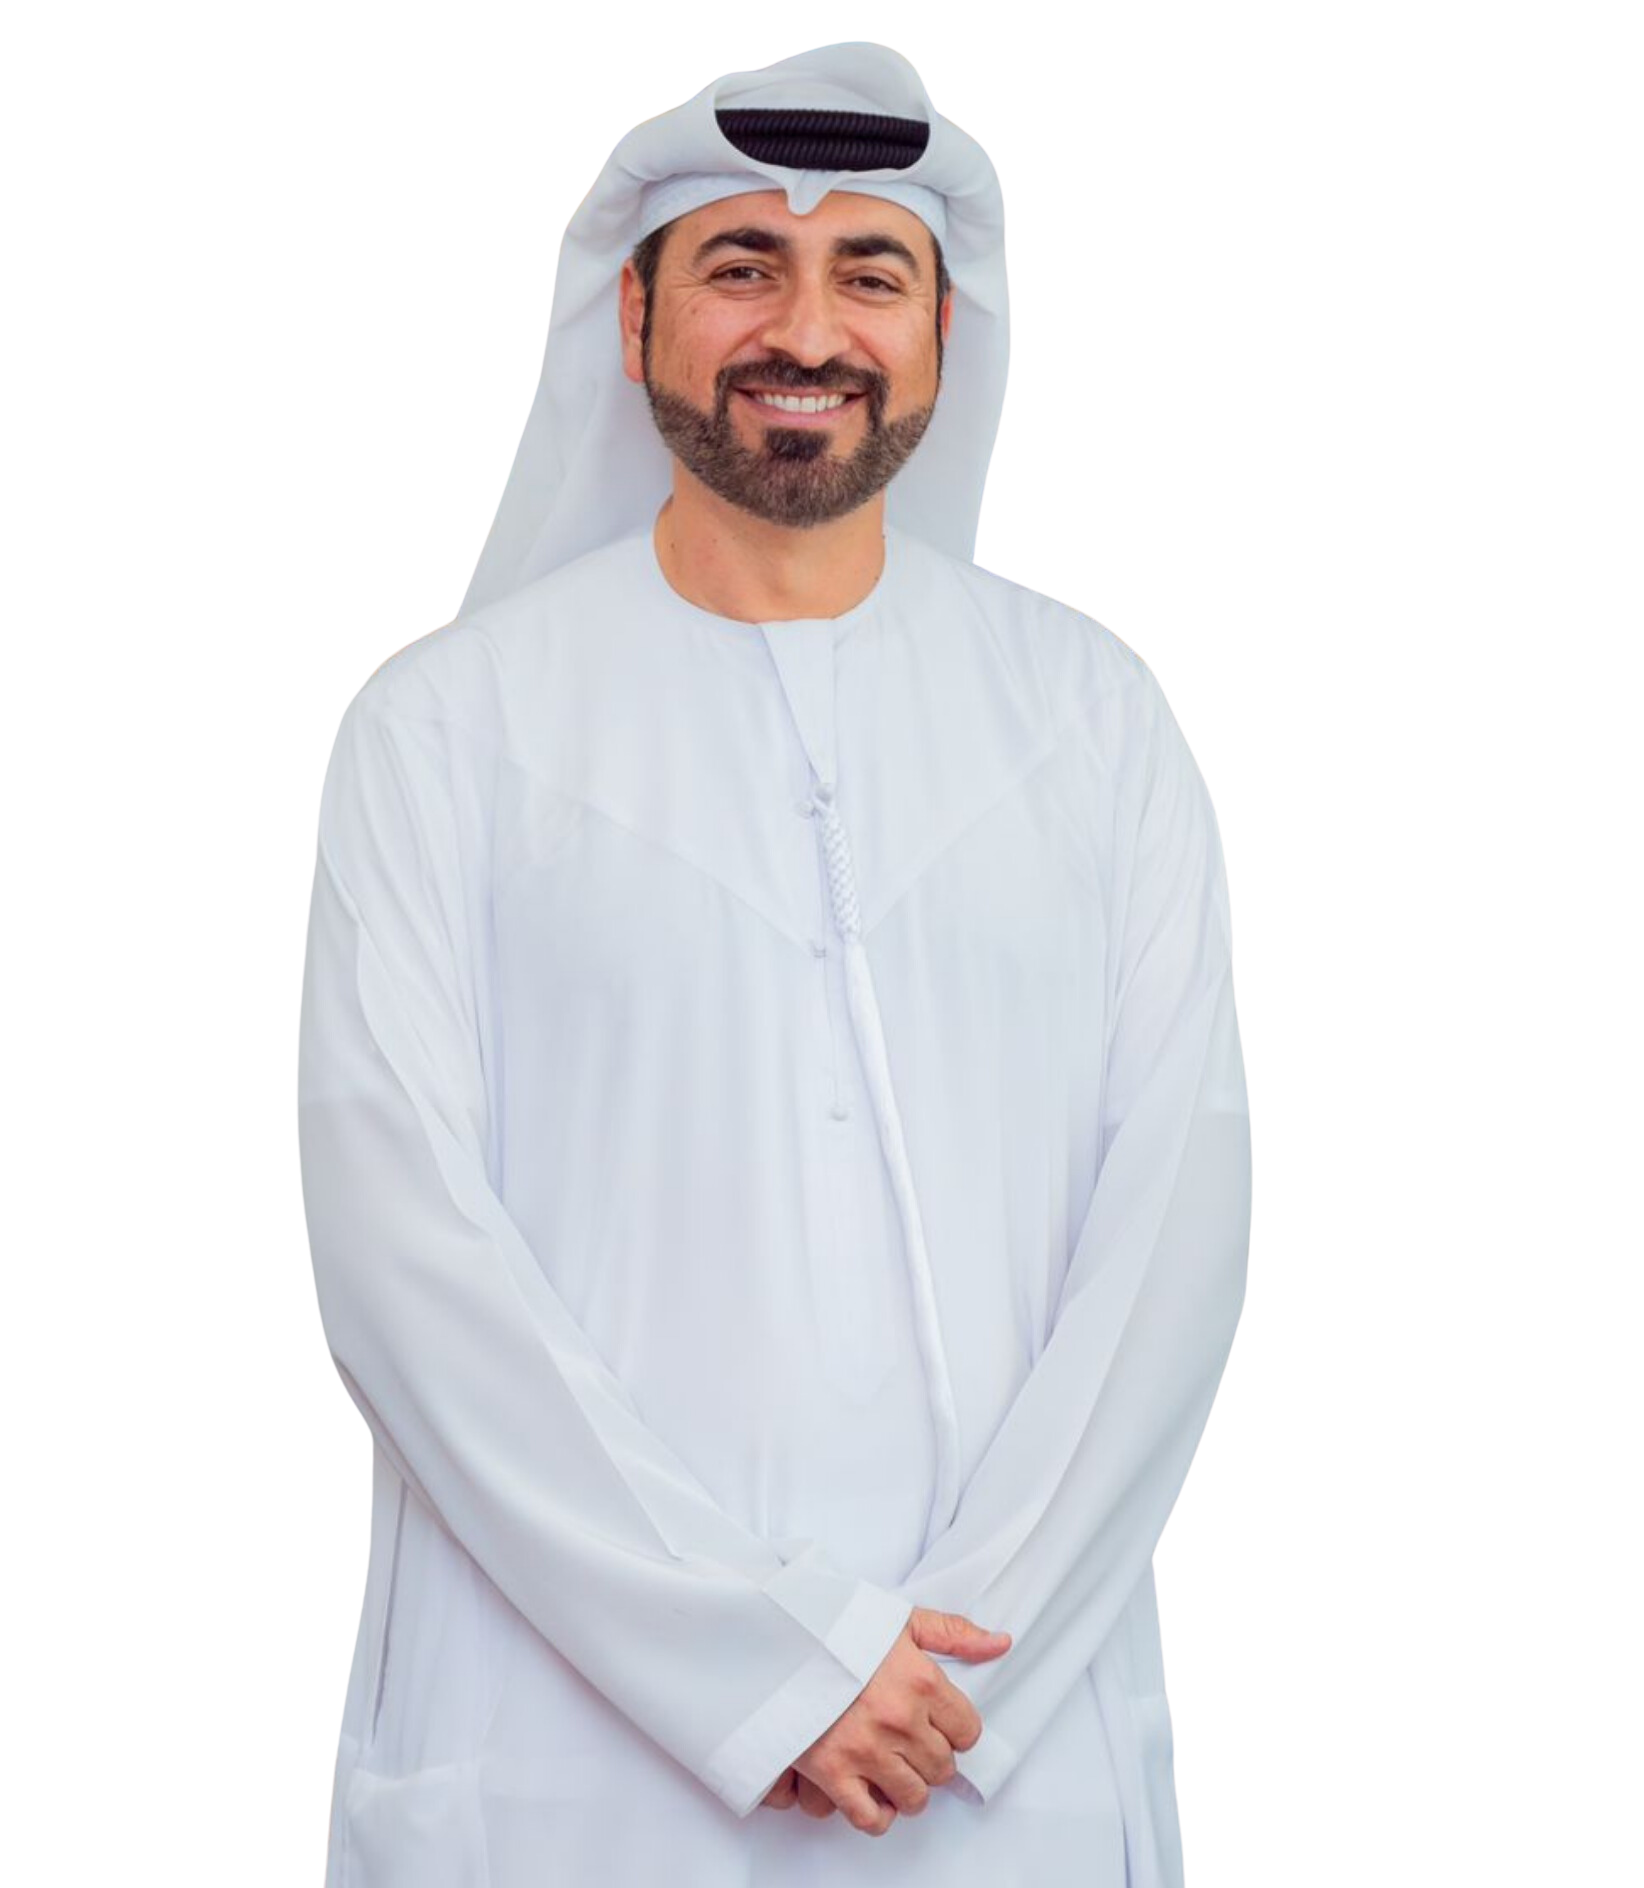 Hamdan Al Mansoori